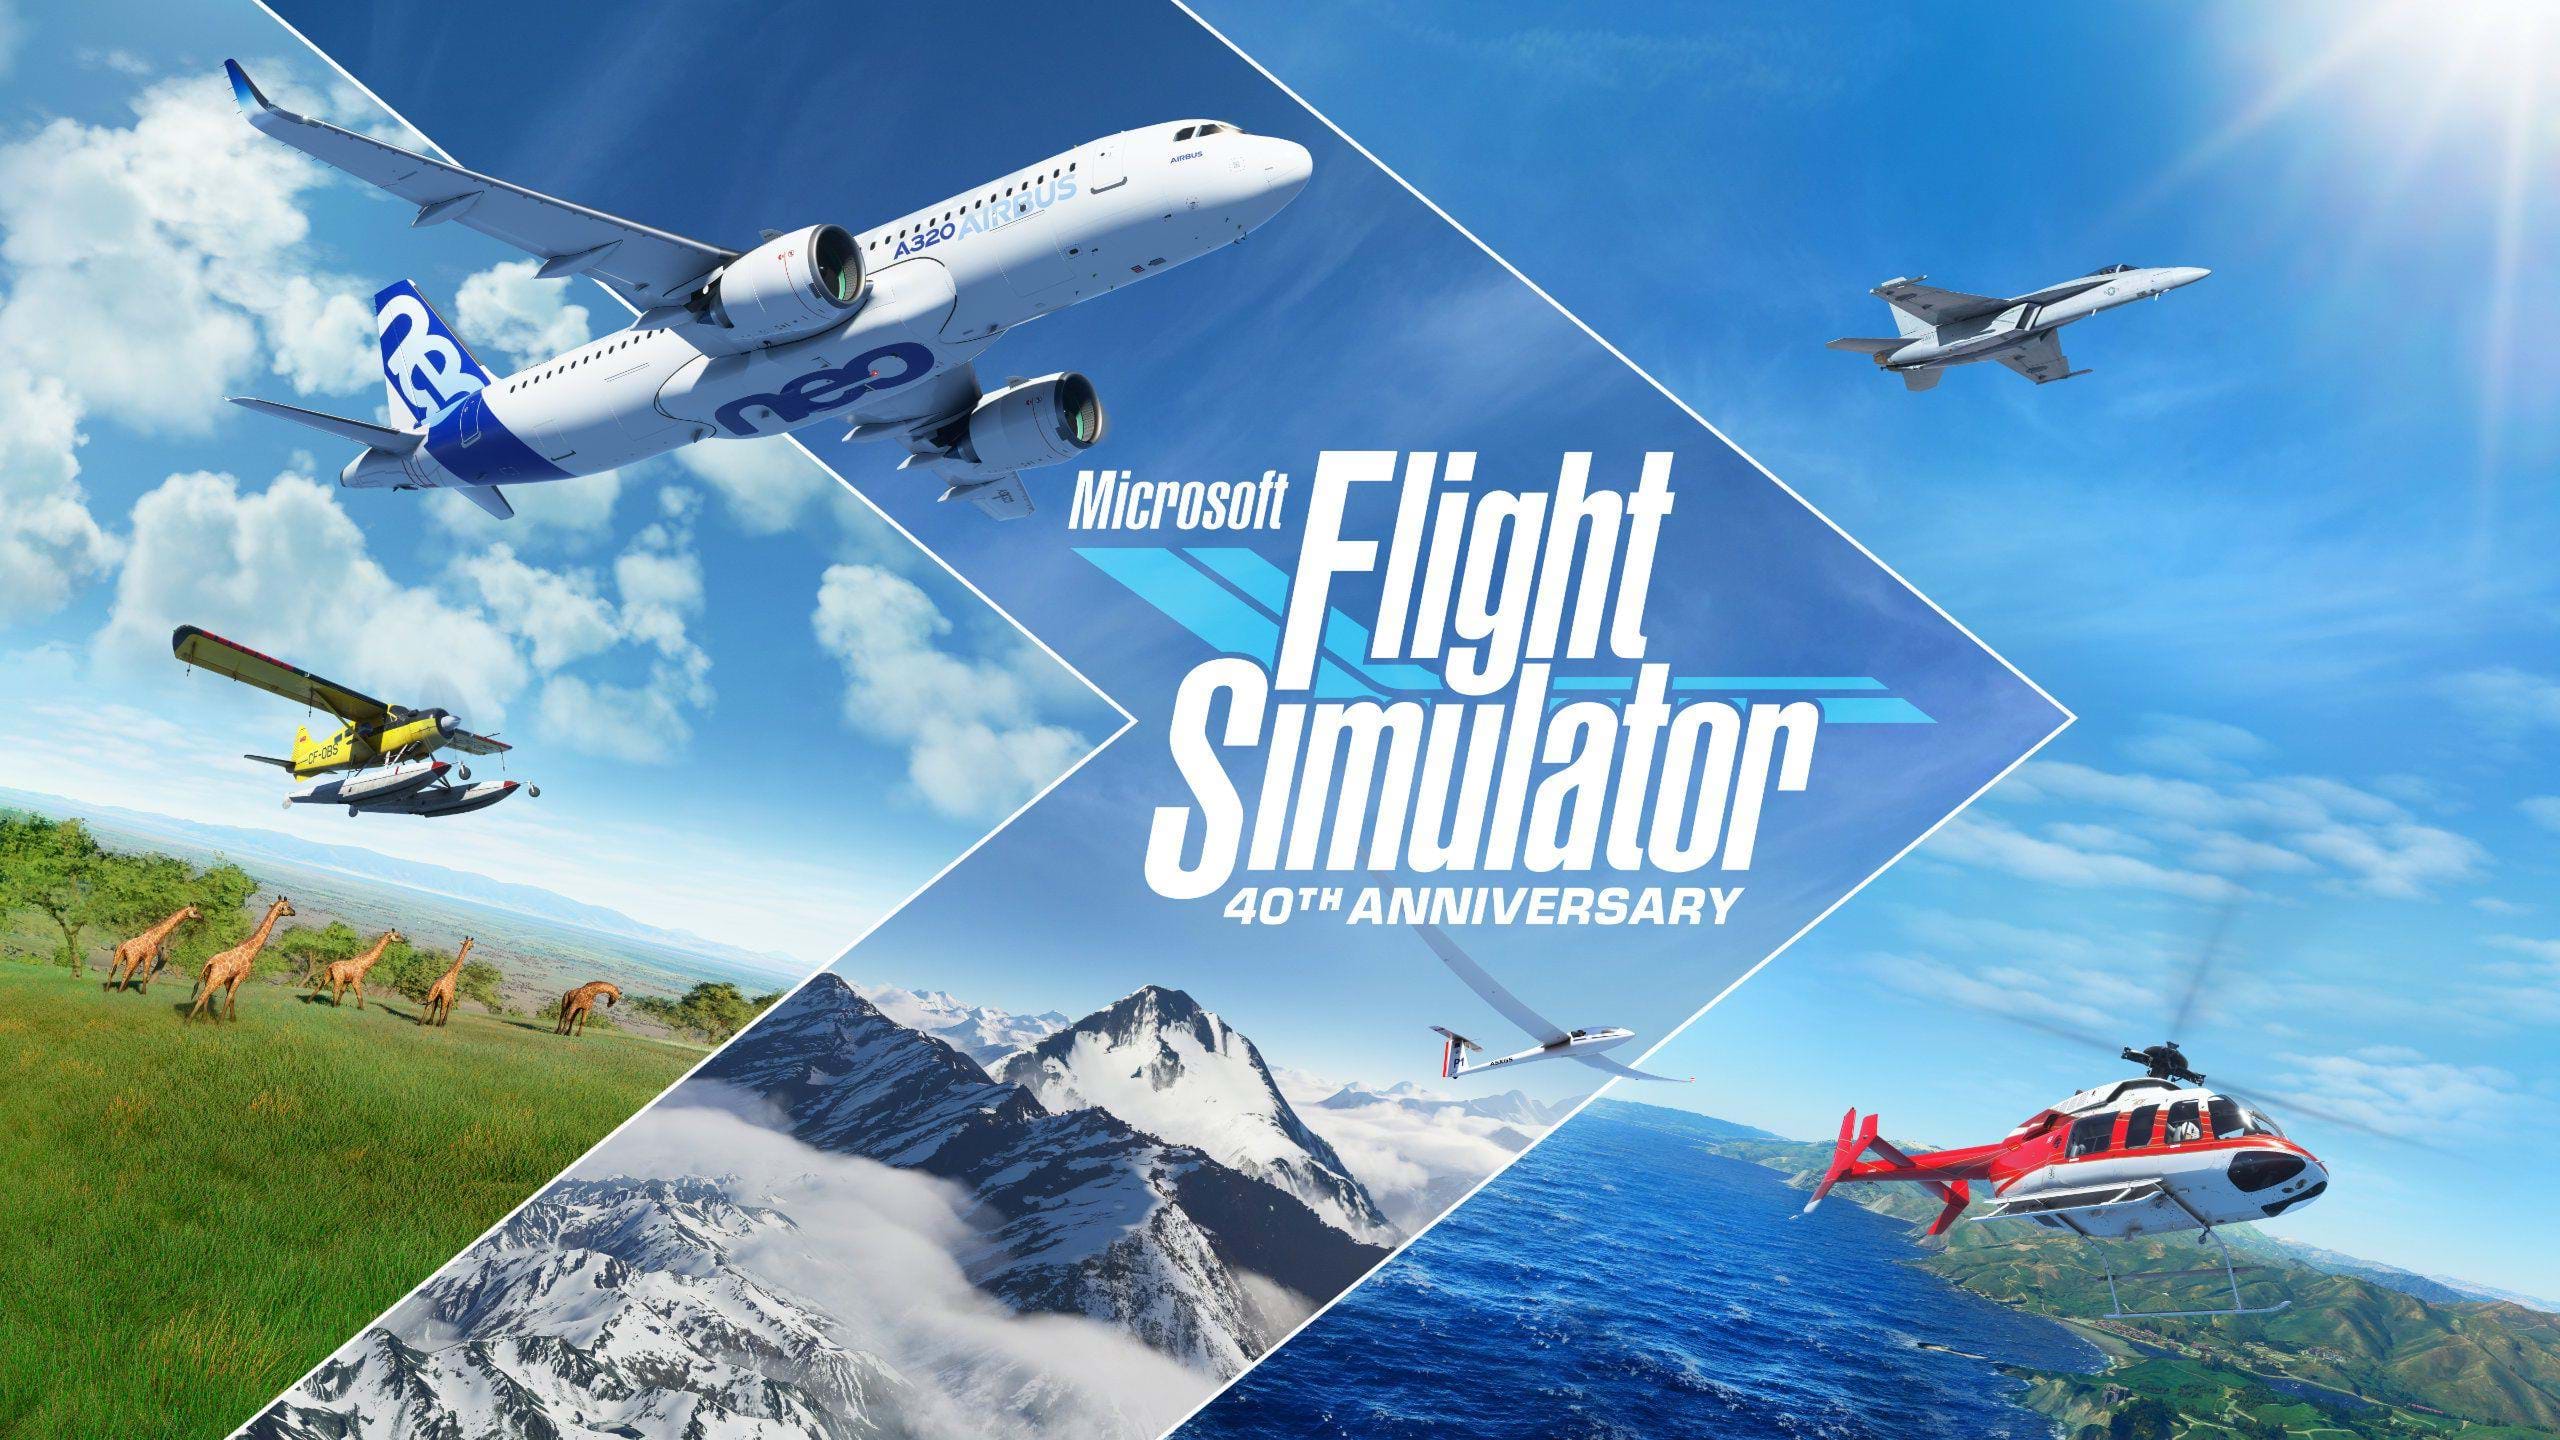 Microsoft Flight Simulator - 40th anniversary - Sim Update 11